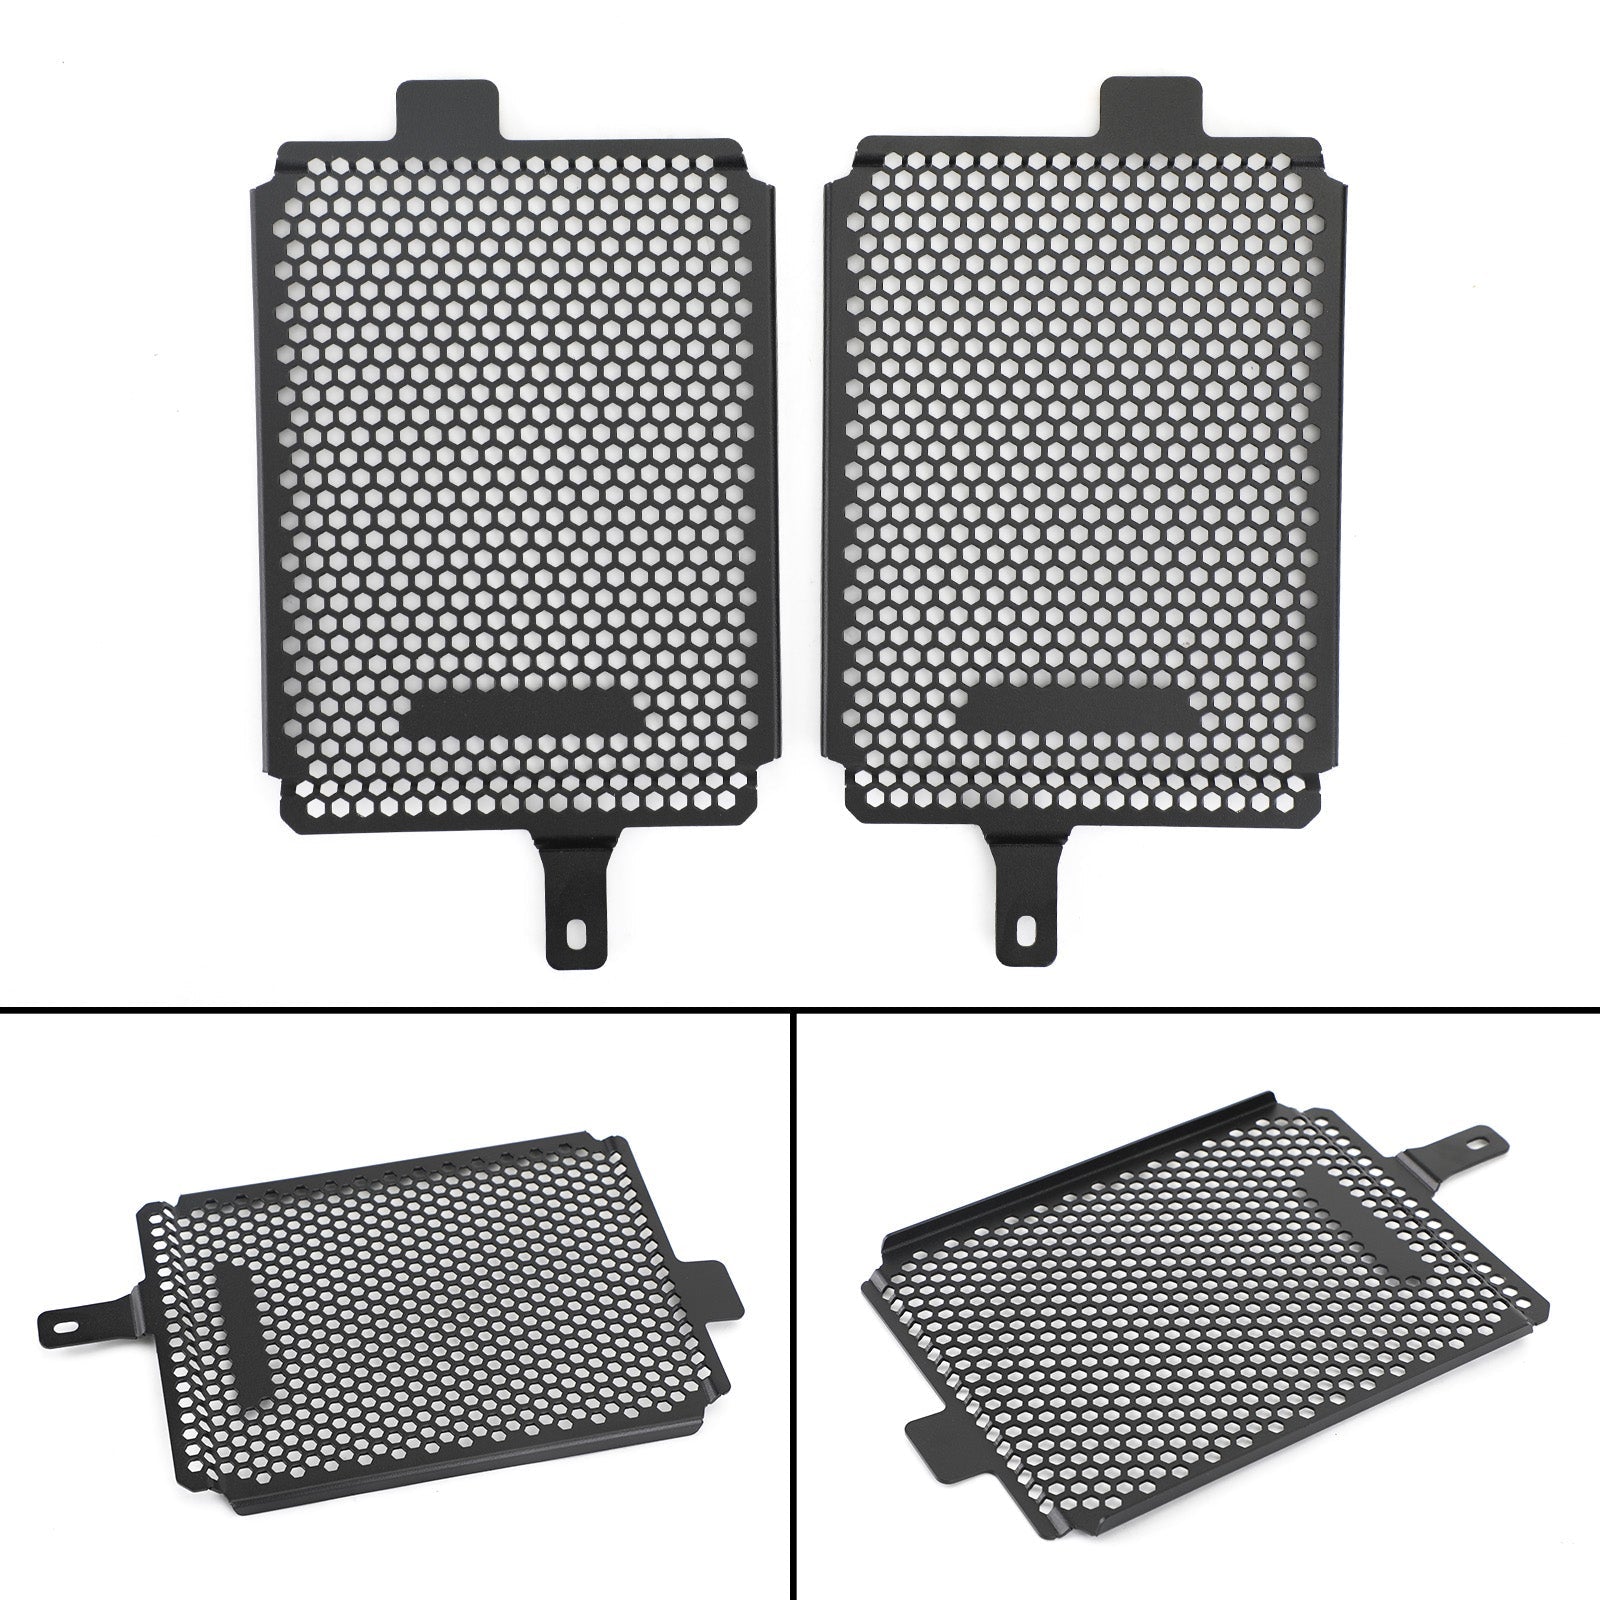 Esclusivo coperchio protezione radiatore Bmw R1250Gs Rallye 2019-2020